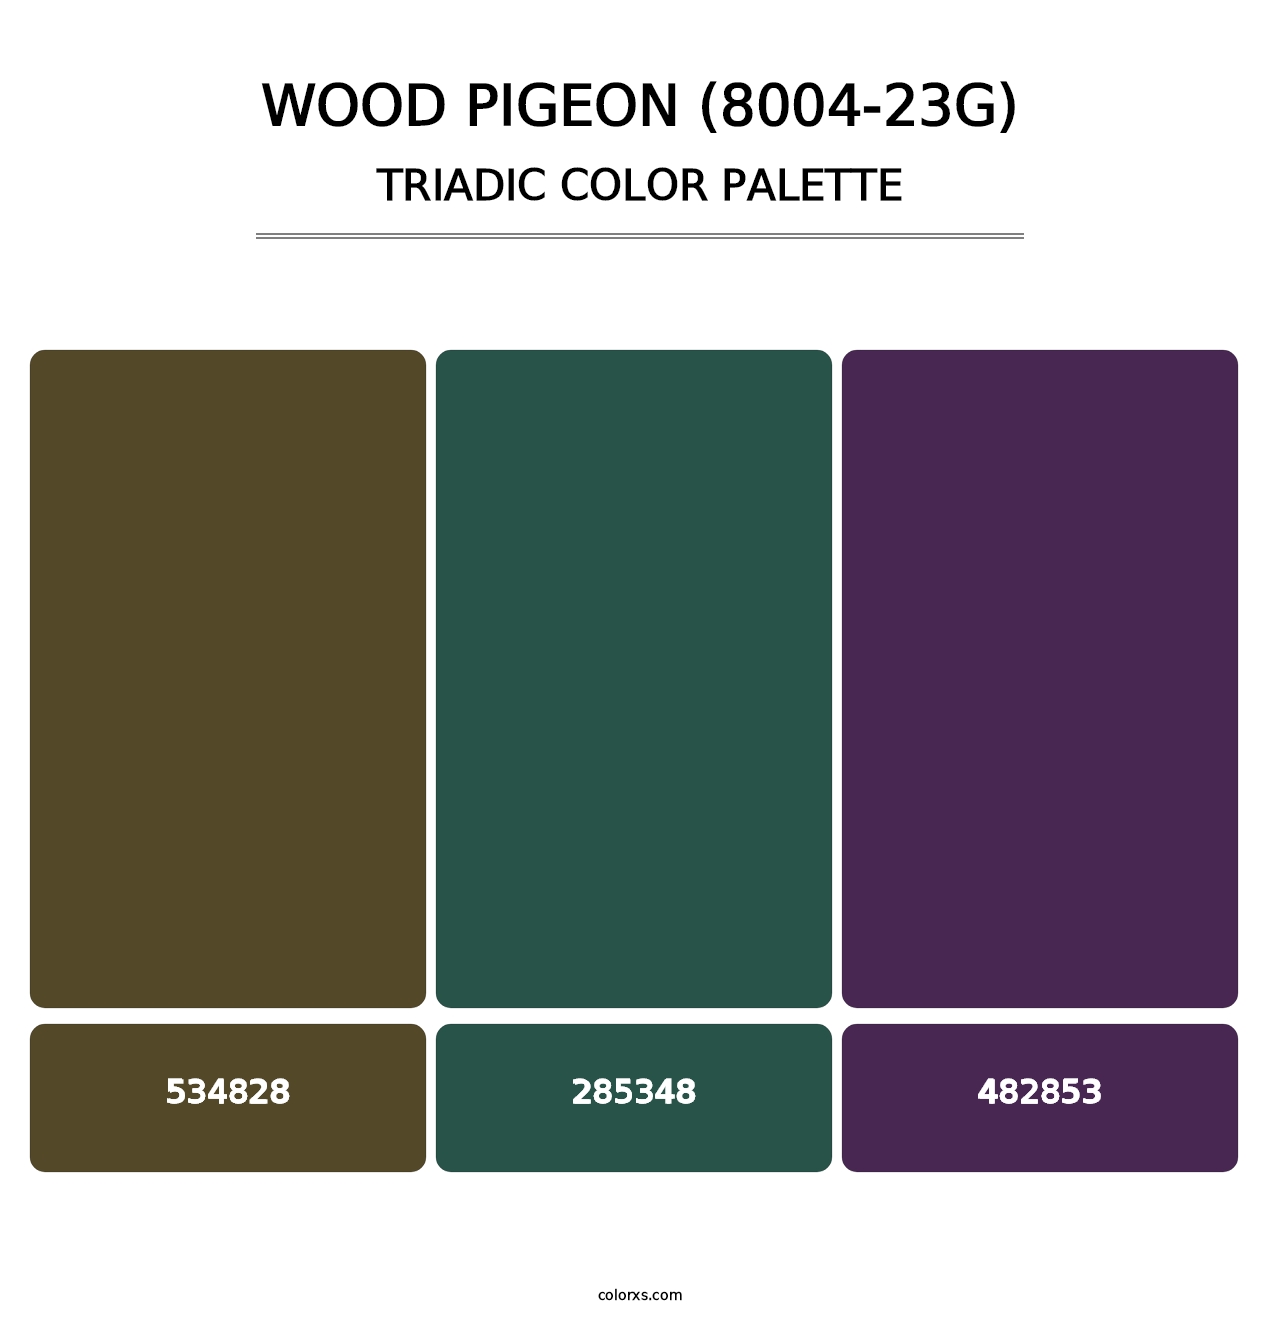 Wood Pigeon (8004-23G) - Triadic Color Palette